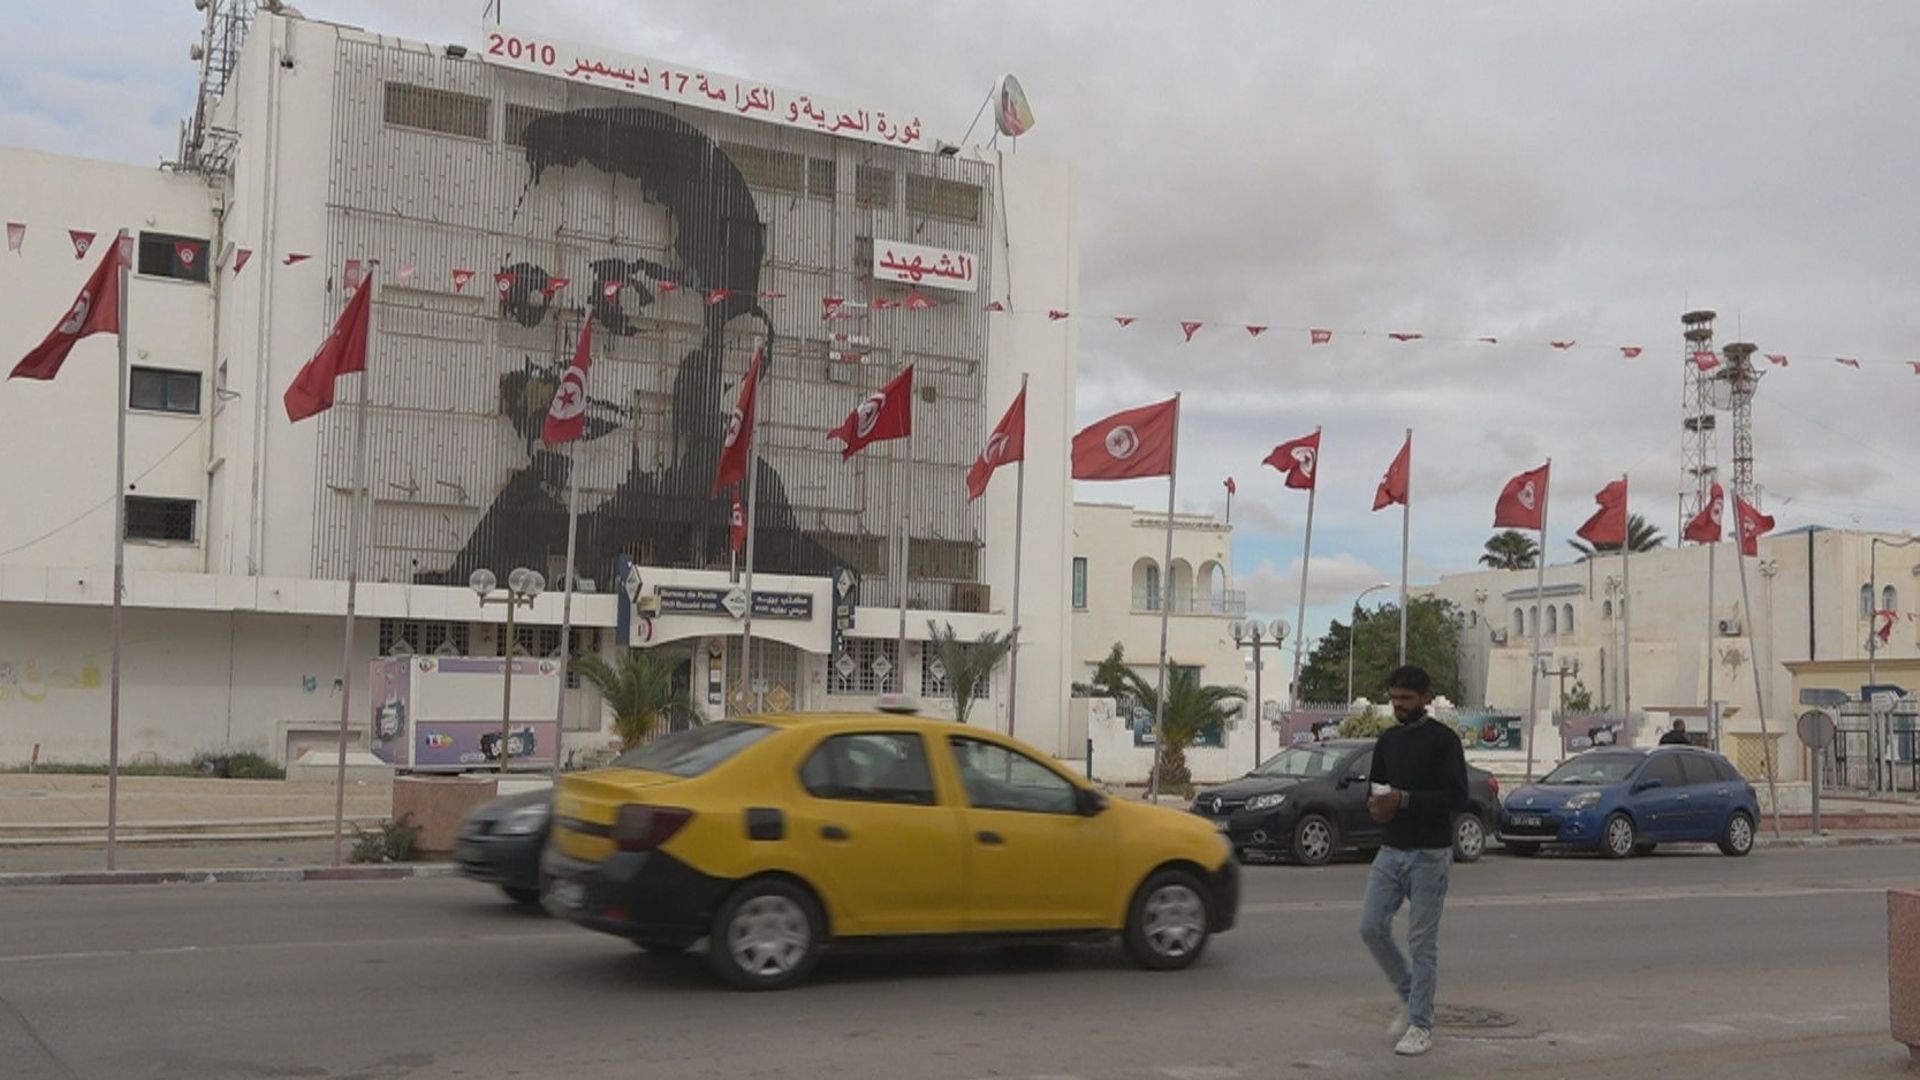 Il y a 10 ans, Mohamed Bouazizi s’immolait en Tunisie : "La révolution ? Nous souffrons davantage maintenant"